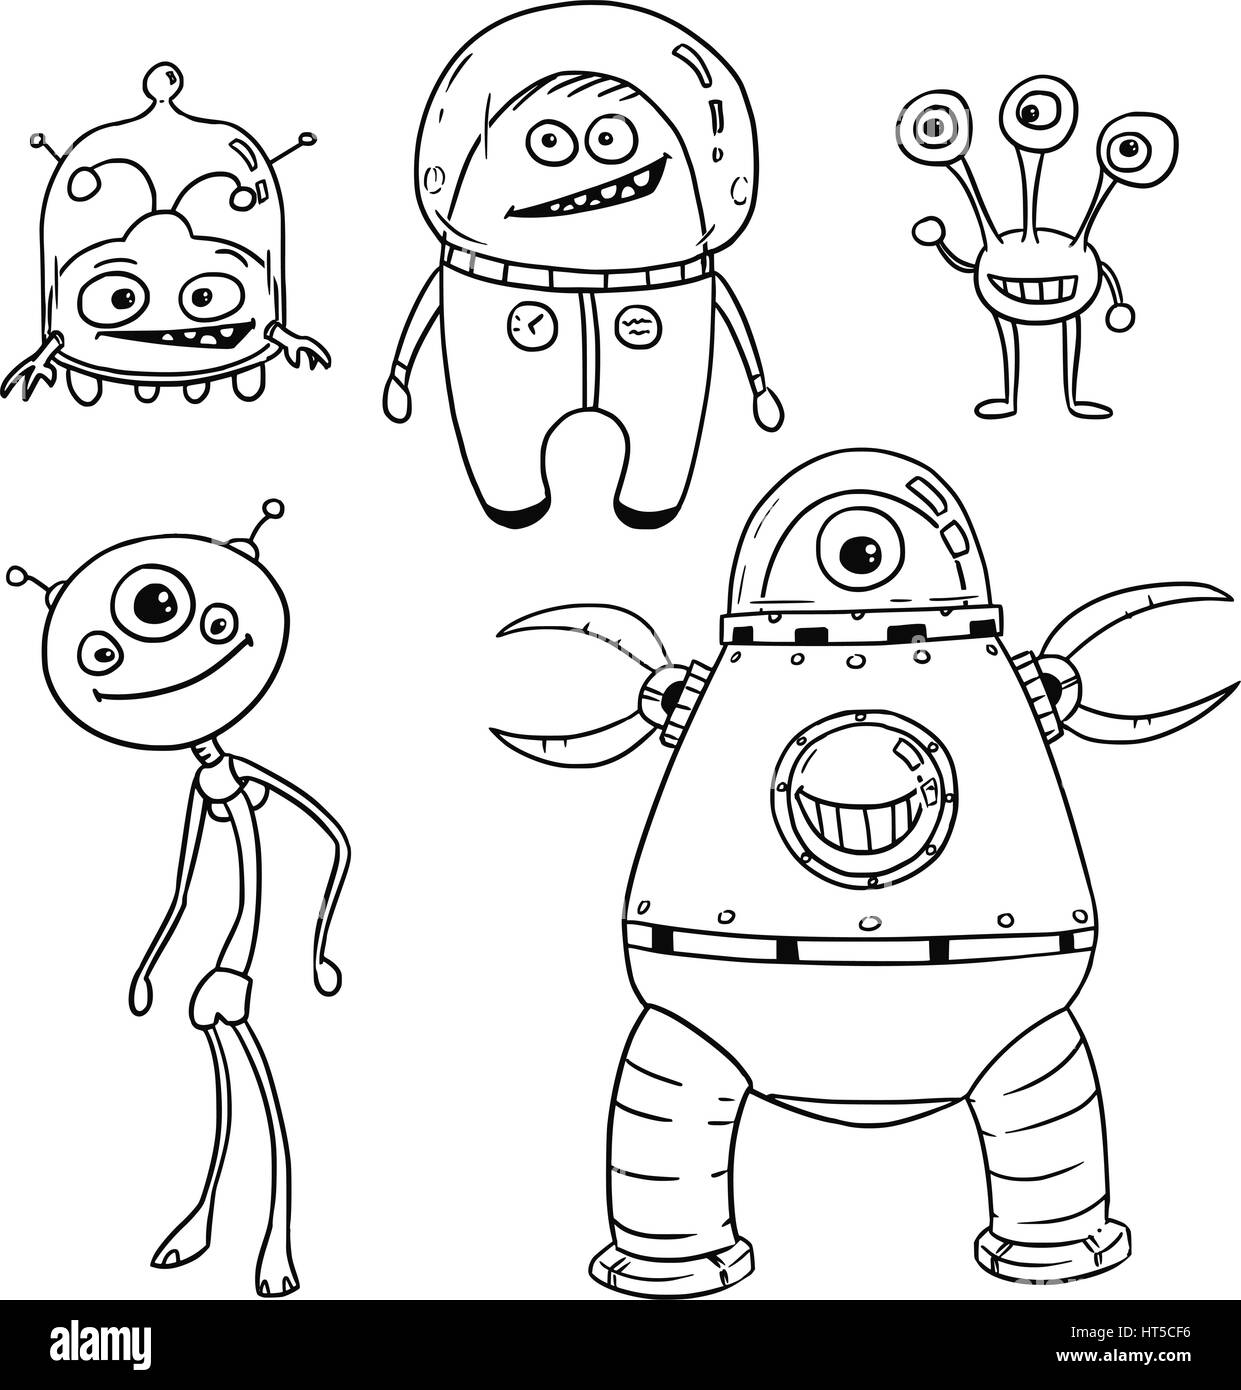 Vektor-Cartoon Set 01 der freundliche Außerirdische Astronauten Stock Vektor